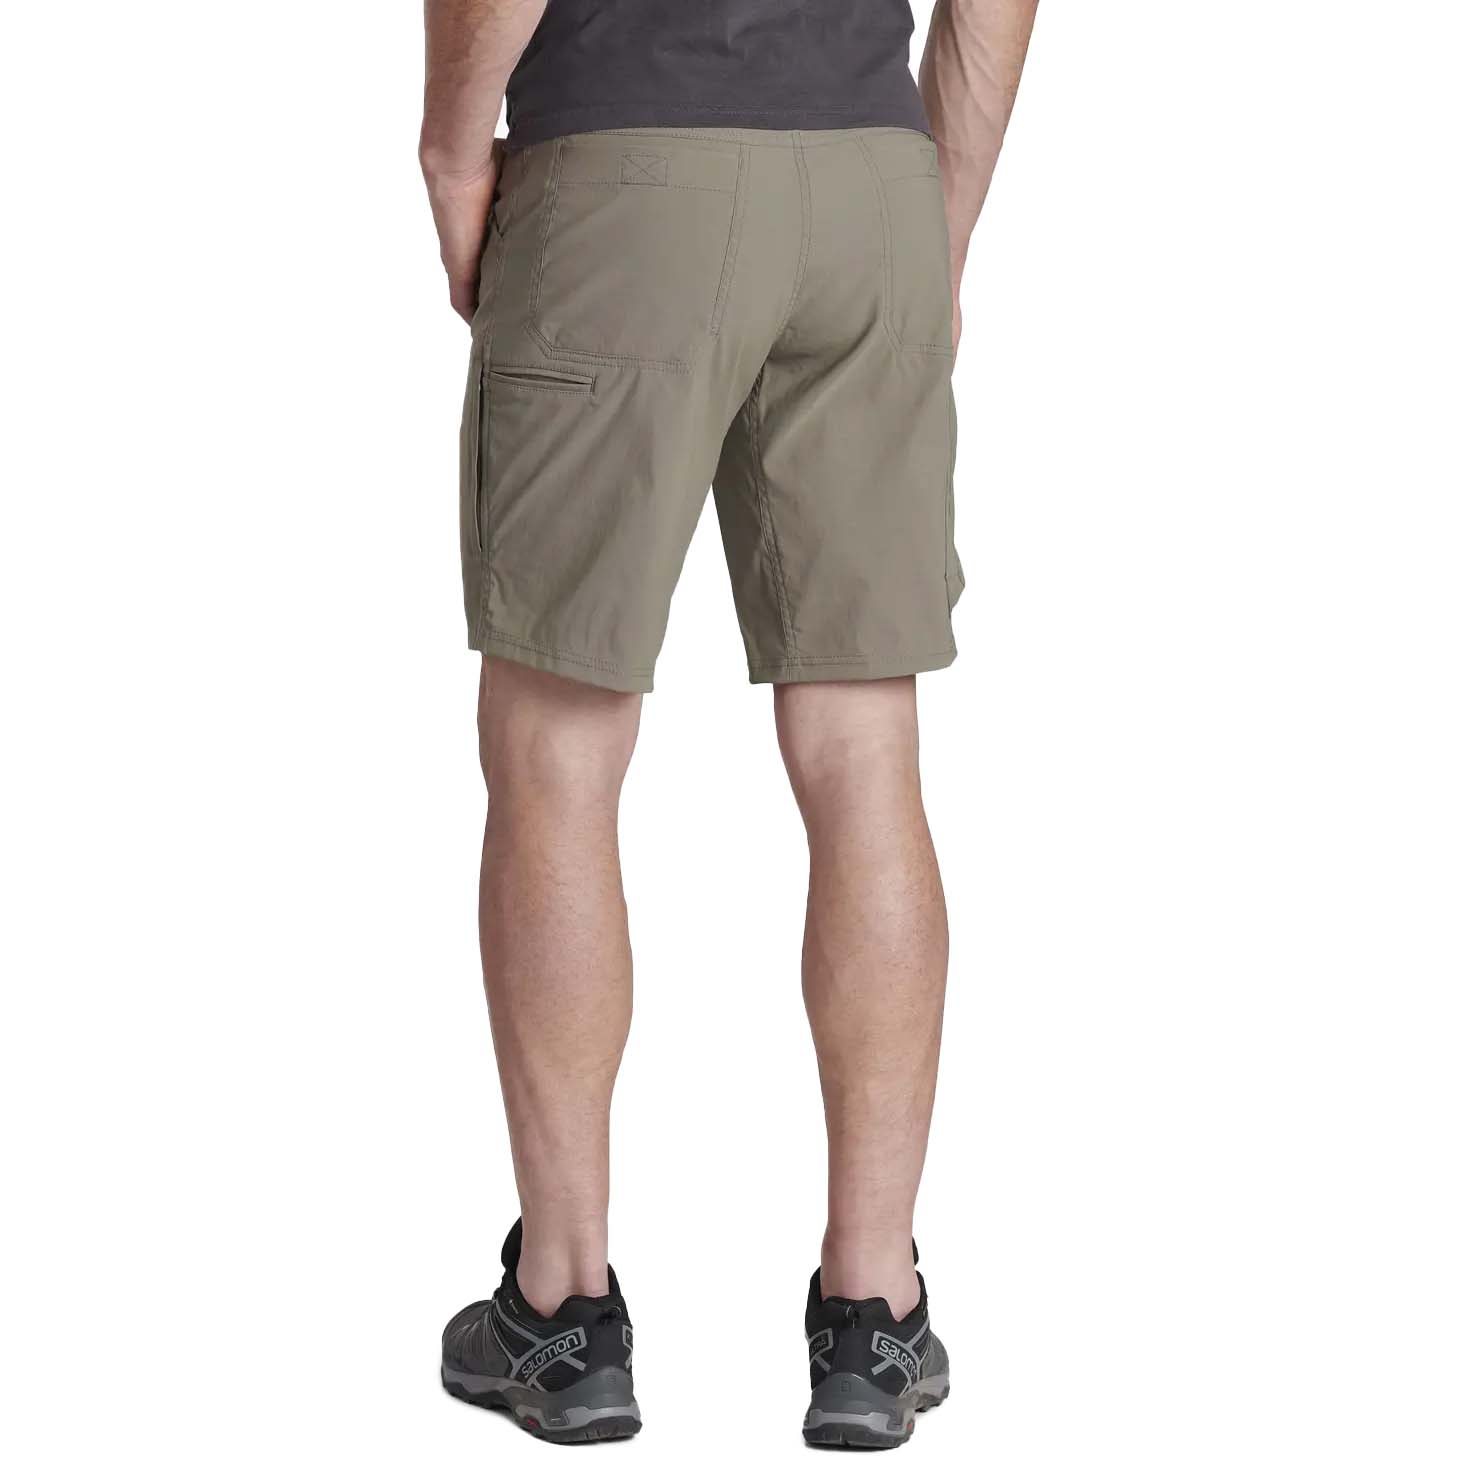 Kuhl Renegade 12" Men's Hiking Shorts